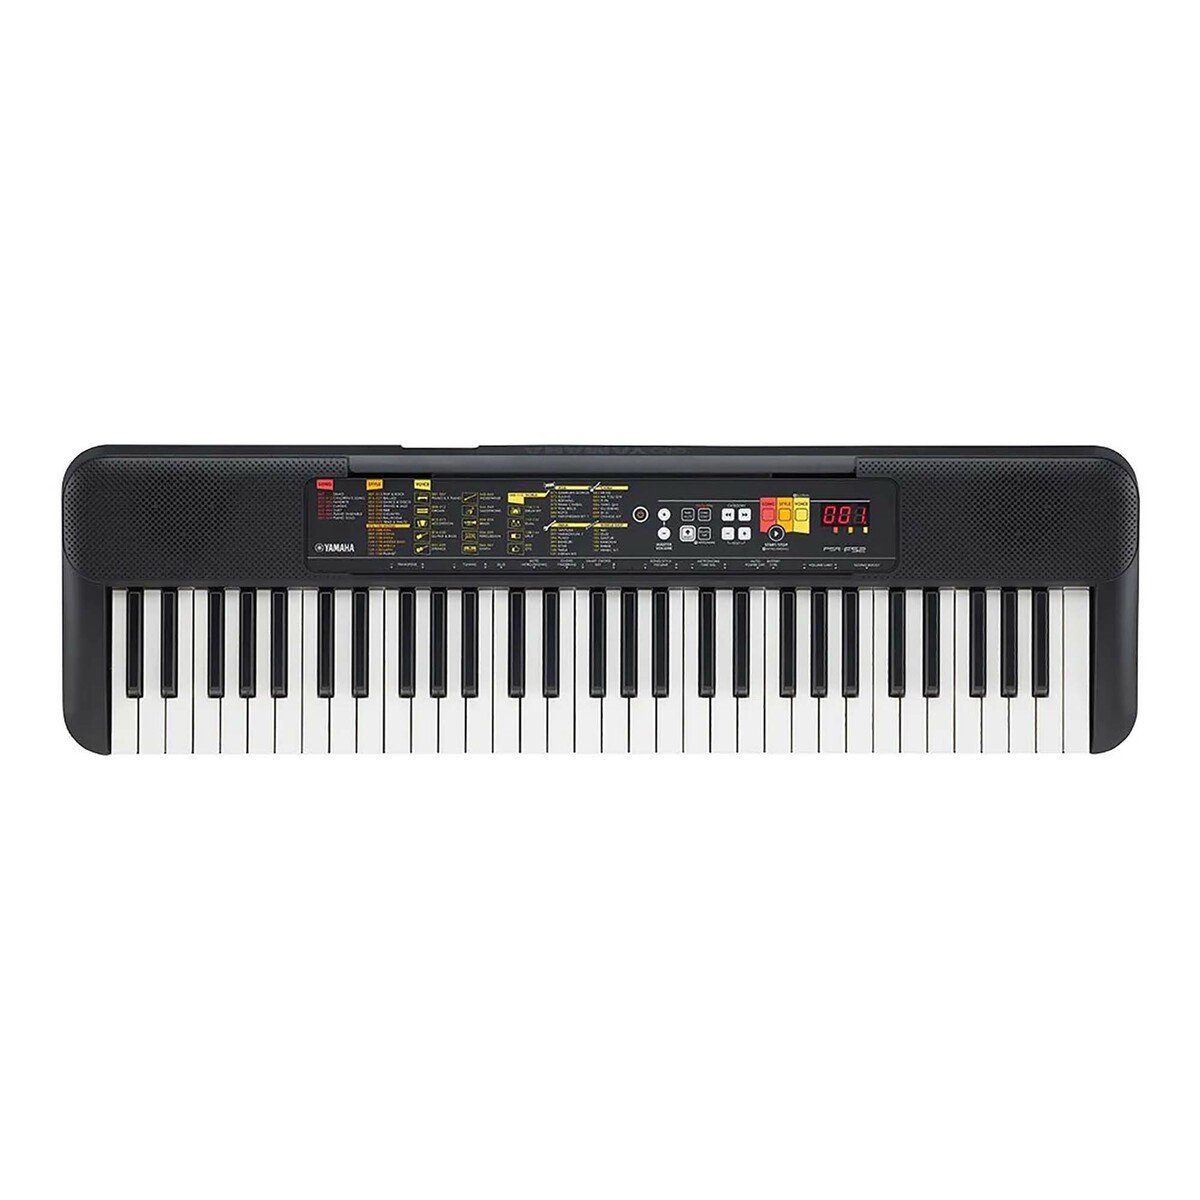 Yamaha Portable Keyboard PSR-F52